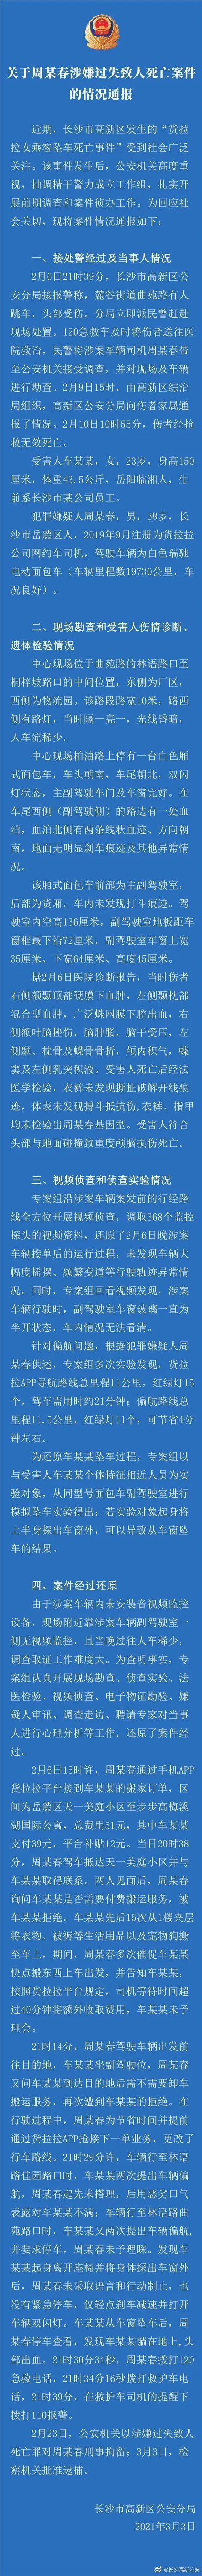 女生乘货拉拉跳车身亡 警方通报调查结果 中国青年网